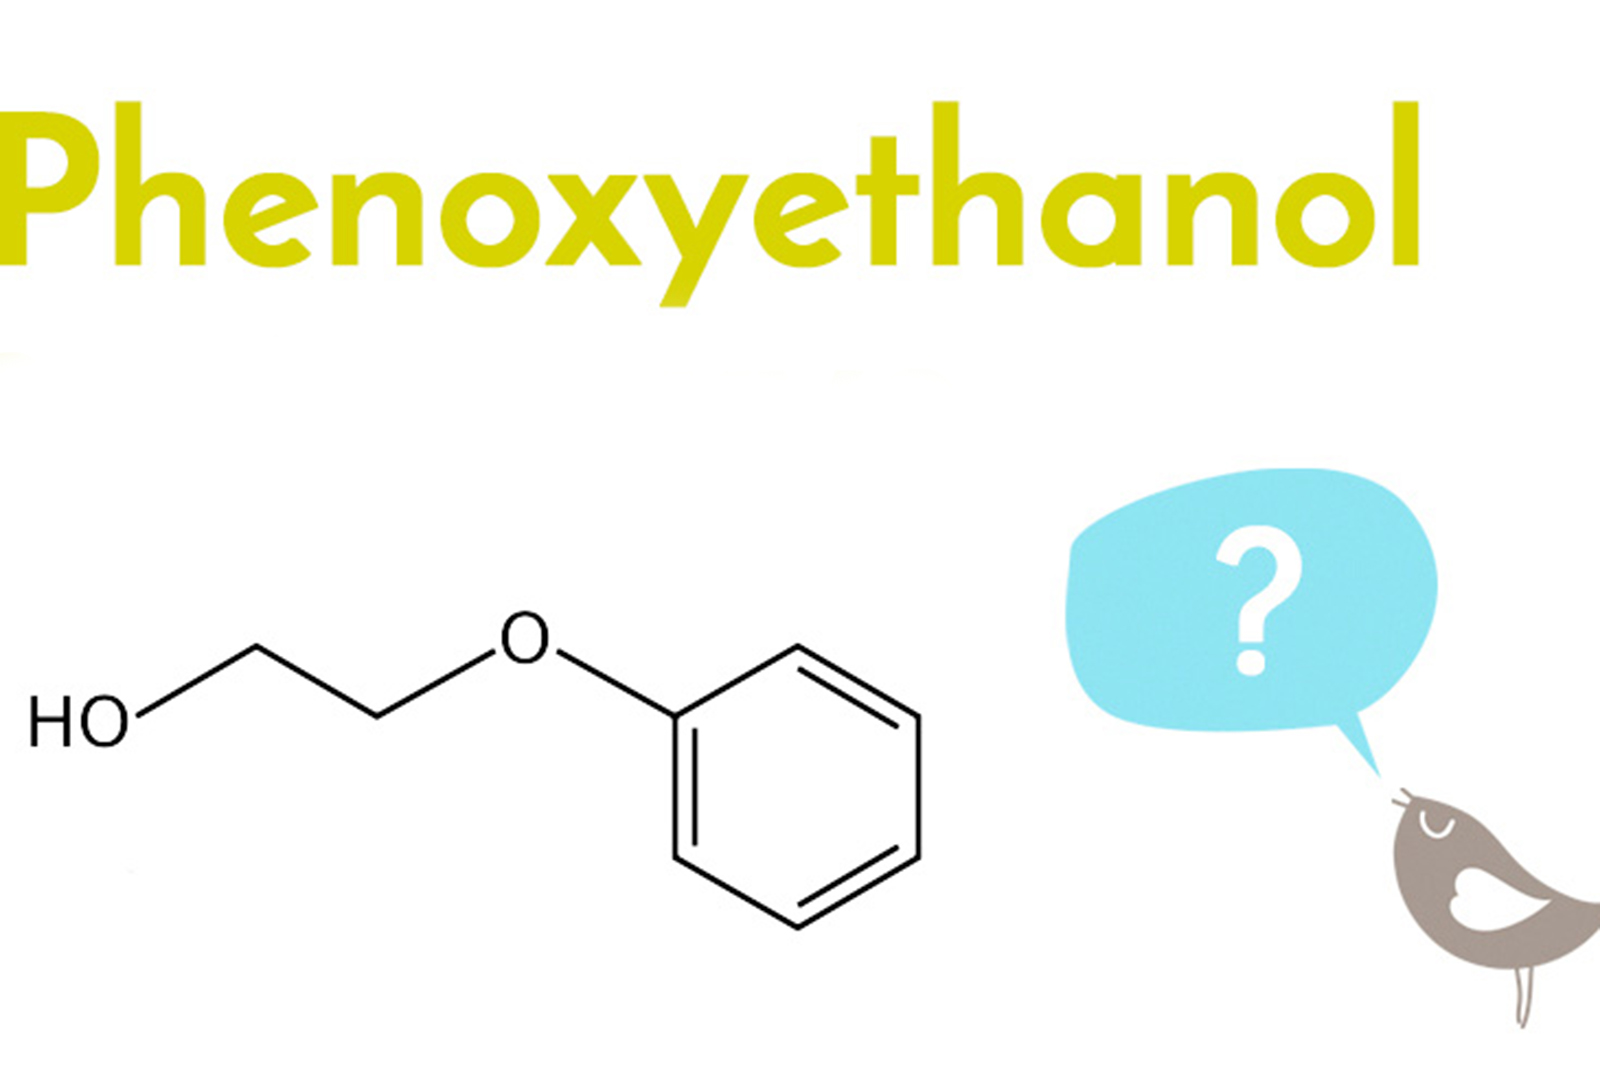 phenoxyethanol est-il dangereux toxique pour la santé produits cosmetiques soins de beauté verité